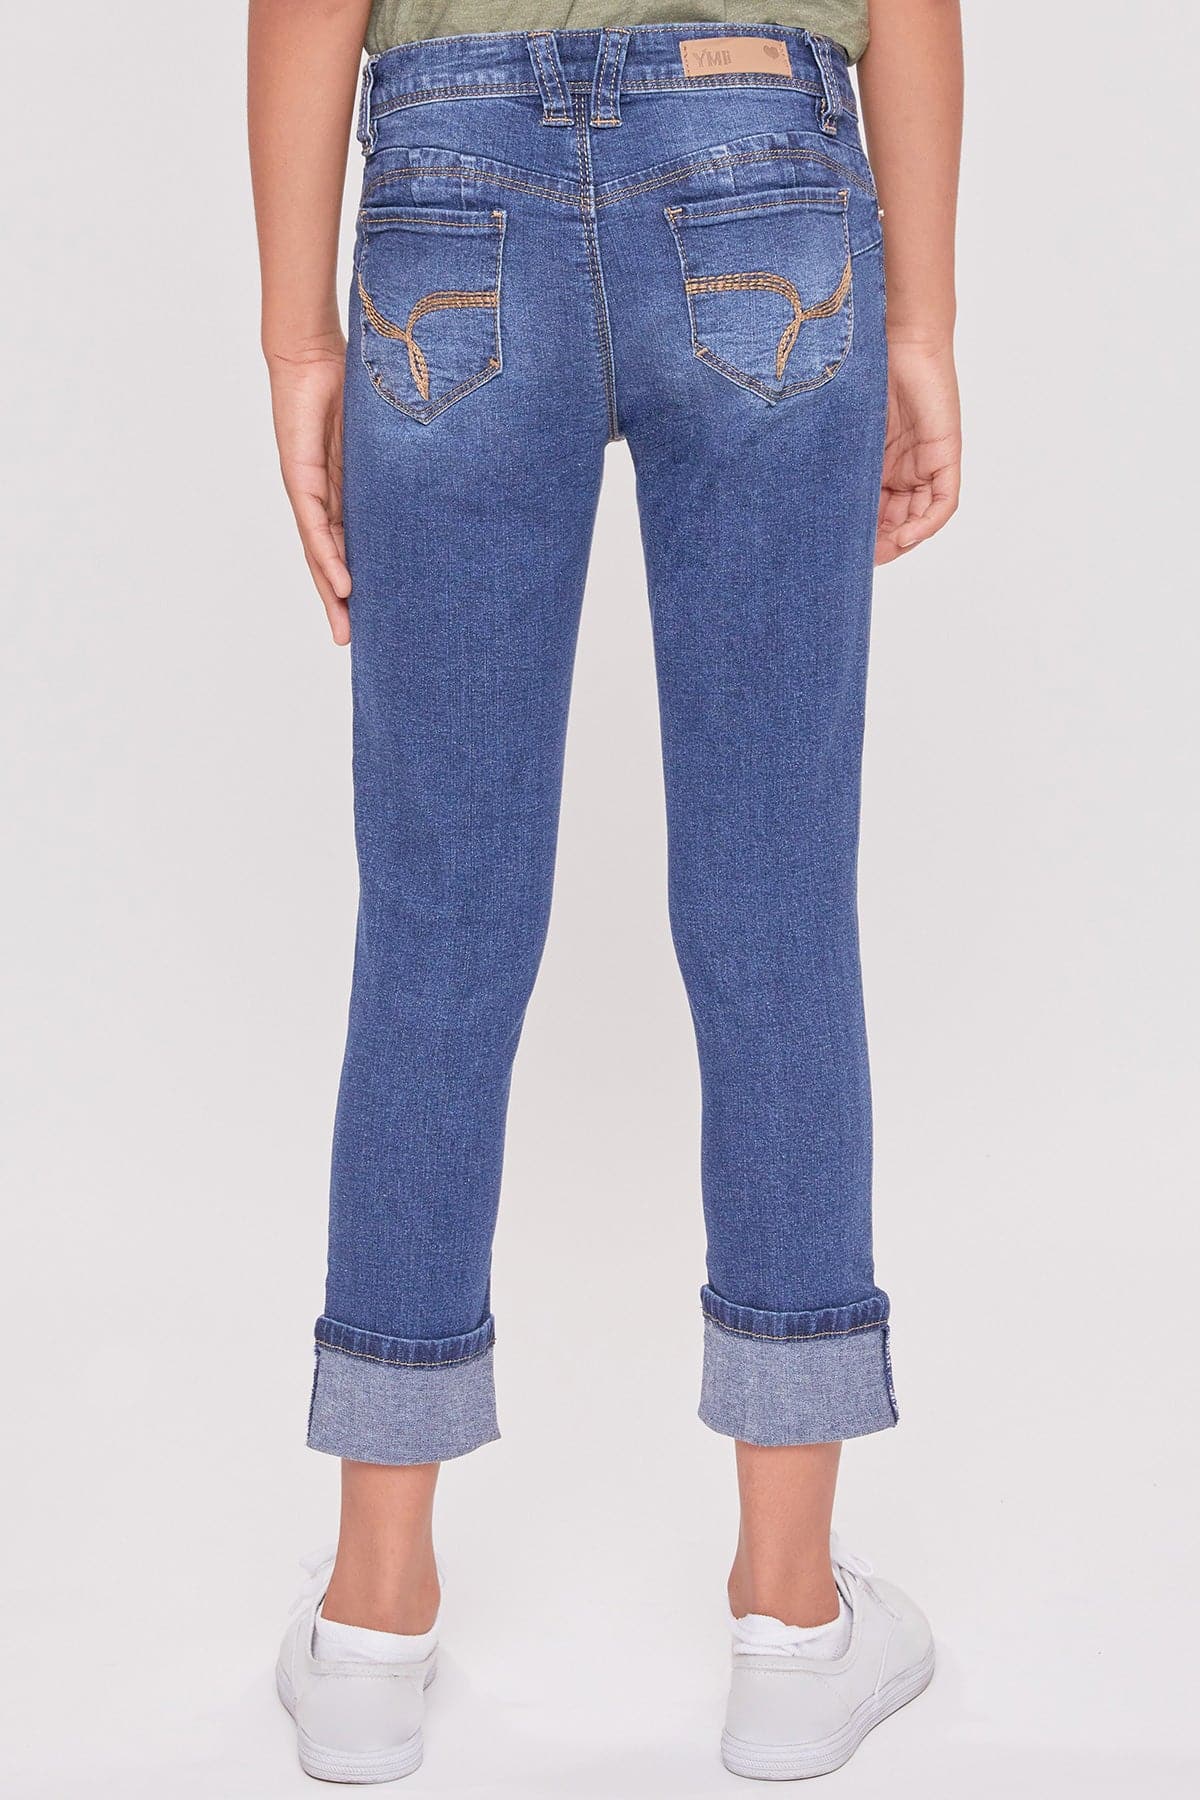 Girls WannaBettaFit Cuff Skinny Jeans